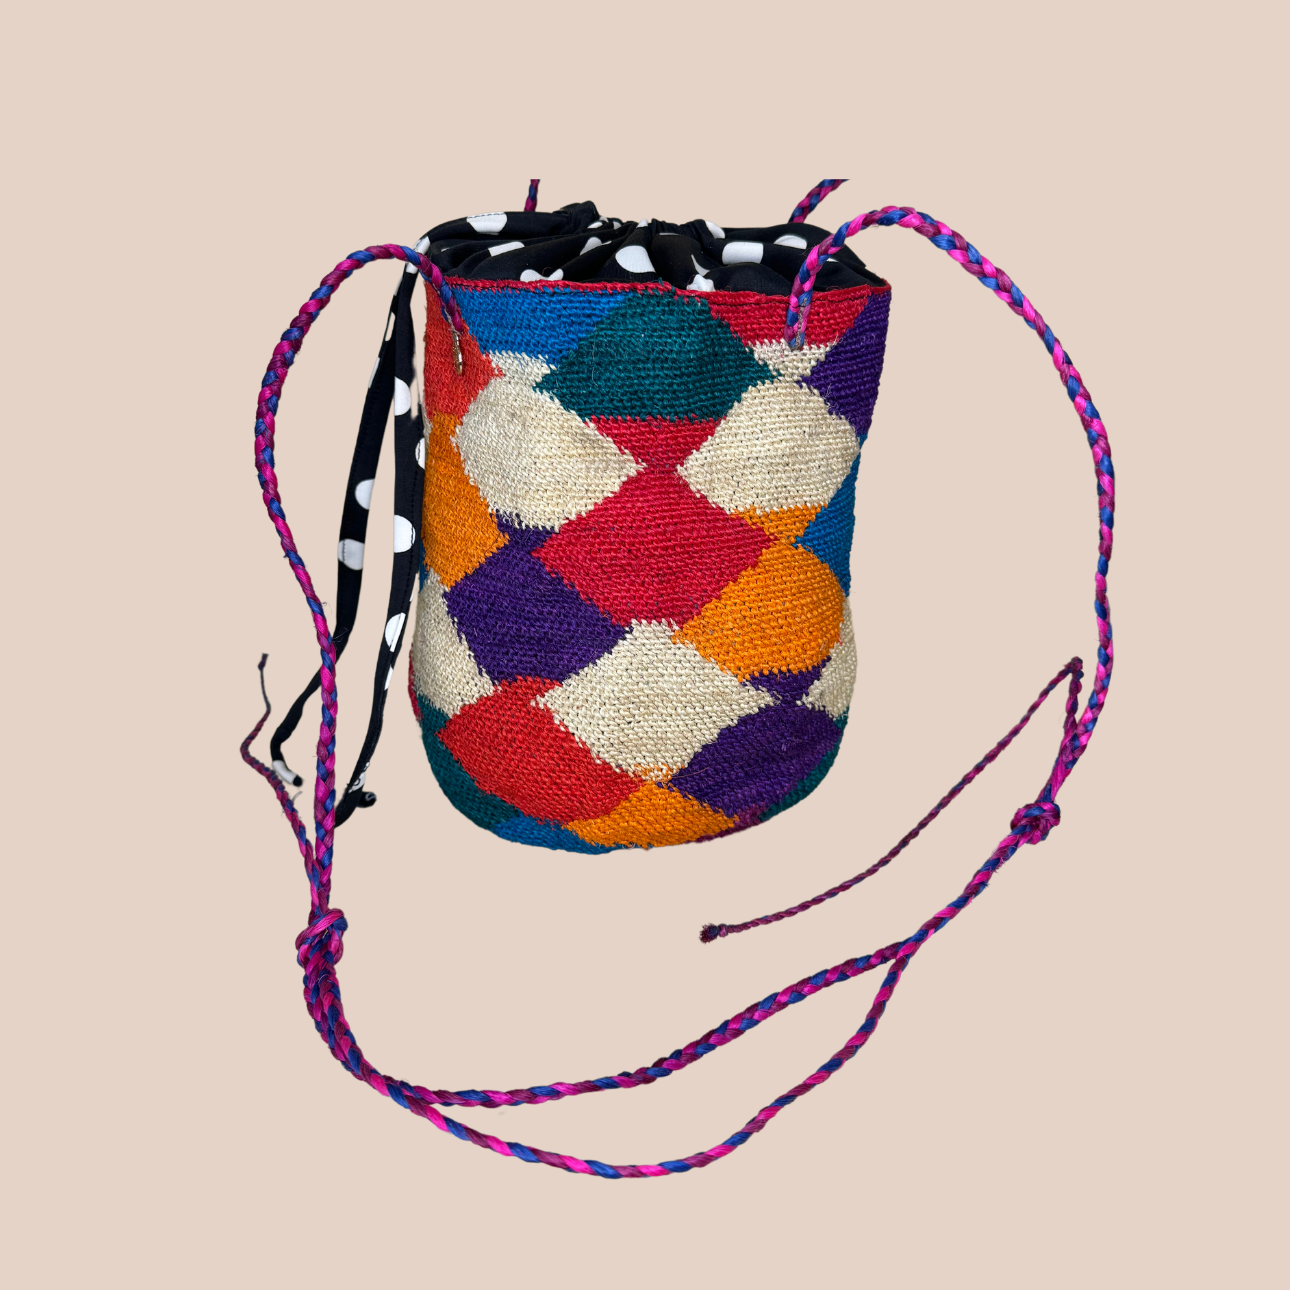  Image du sac GUAPITA doublure noire pois blancs de Maison Badigo, sac en fibres de cactus multicolore unique et tendance